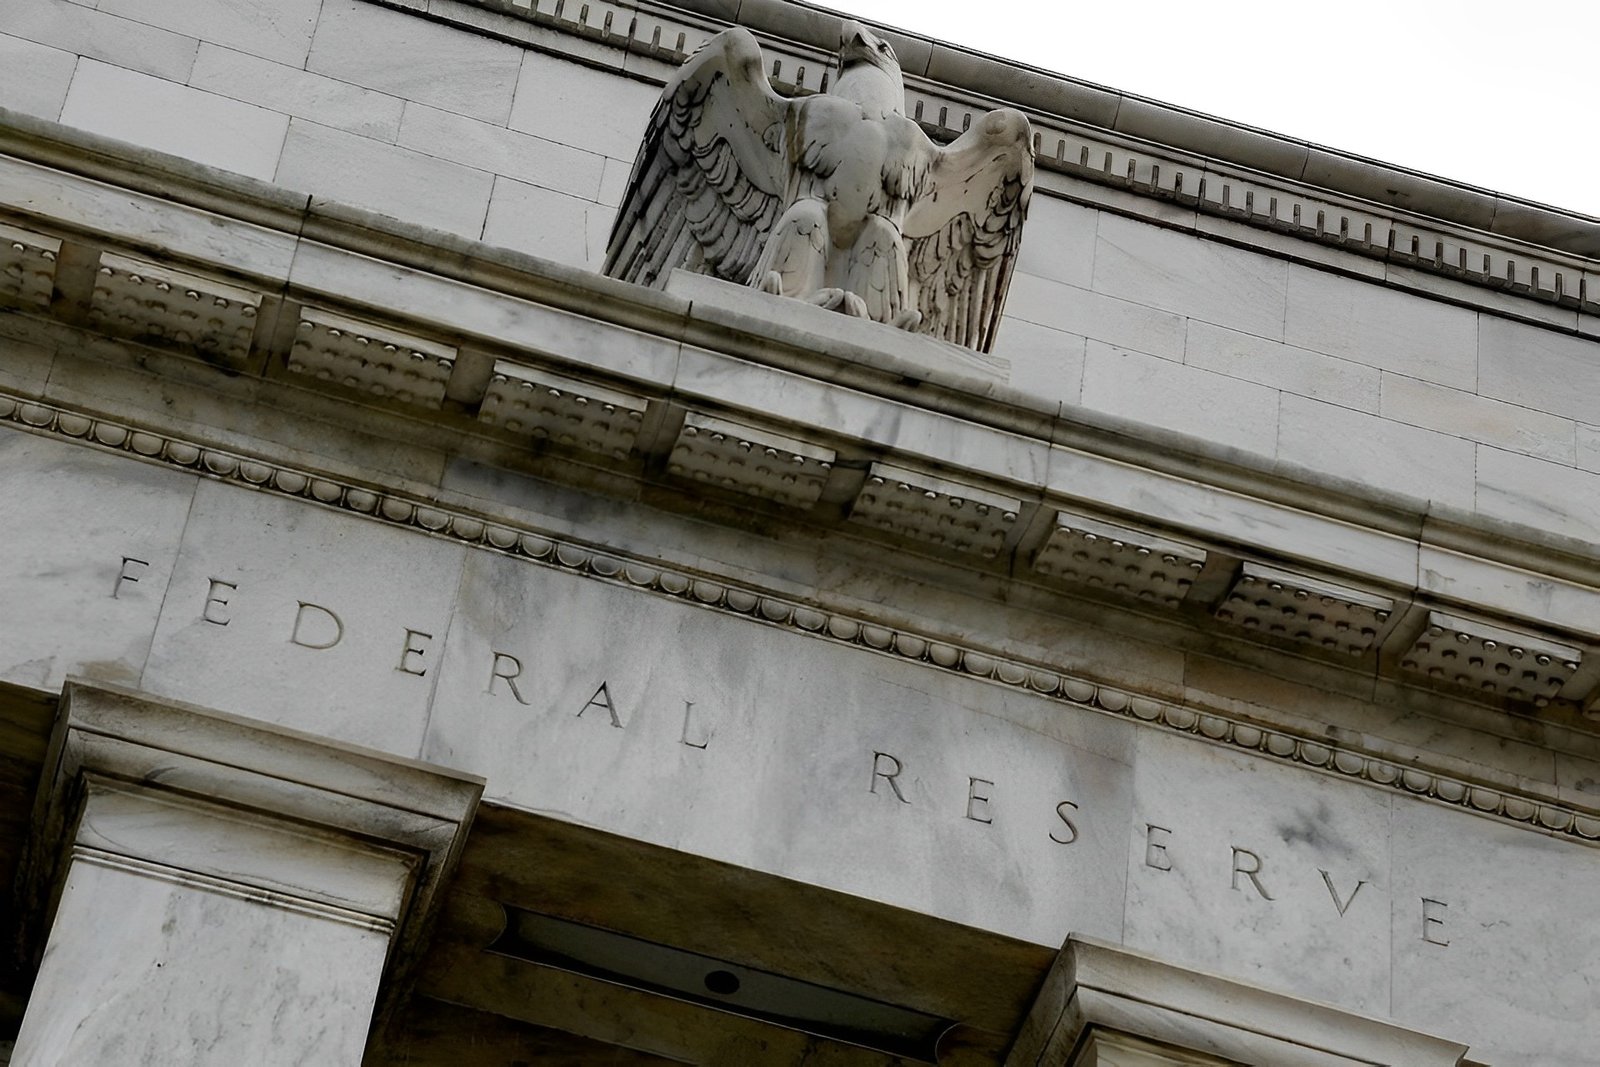 Federal Reserve building's facade in Washington.